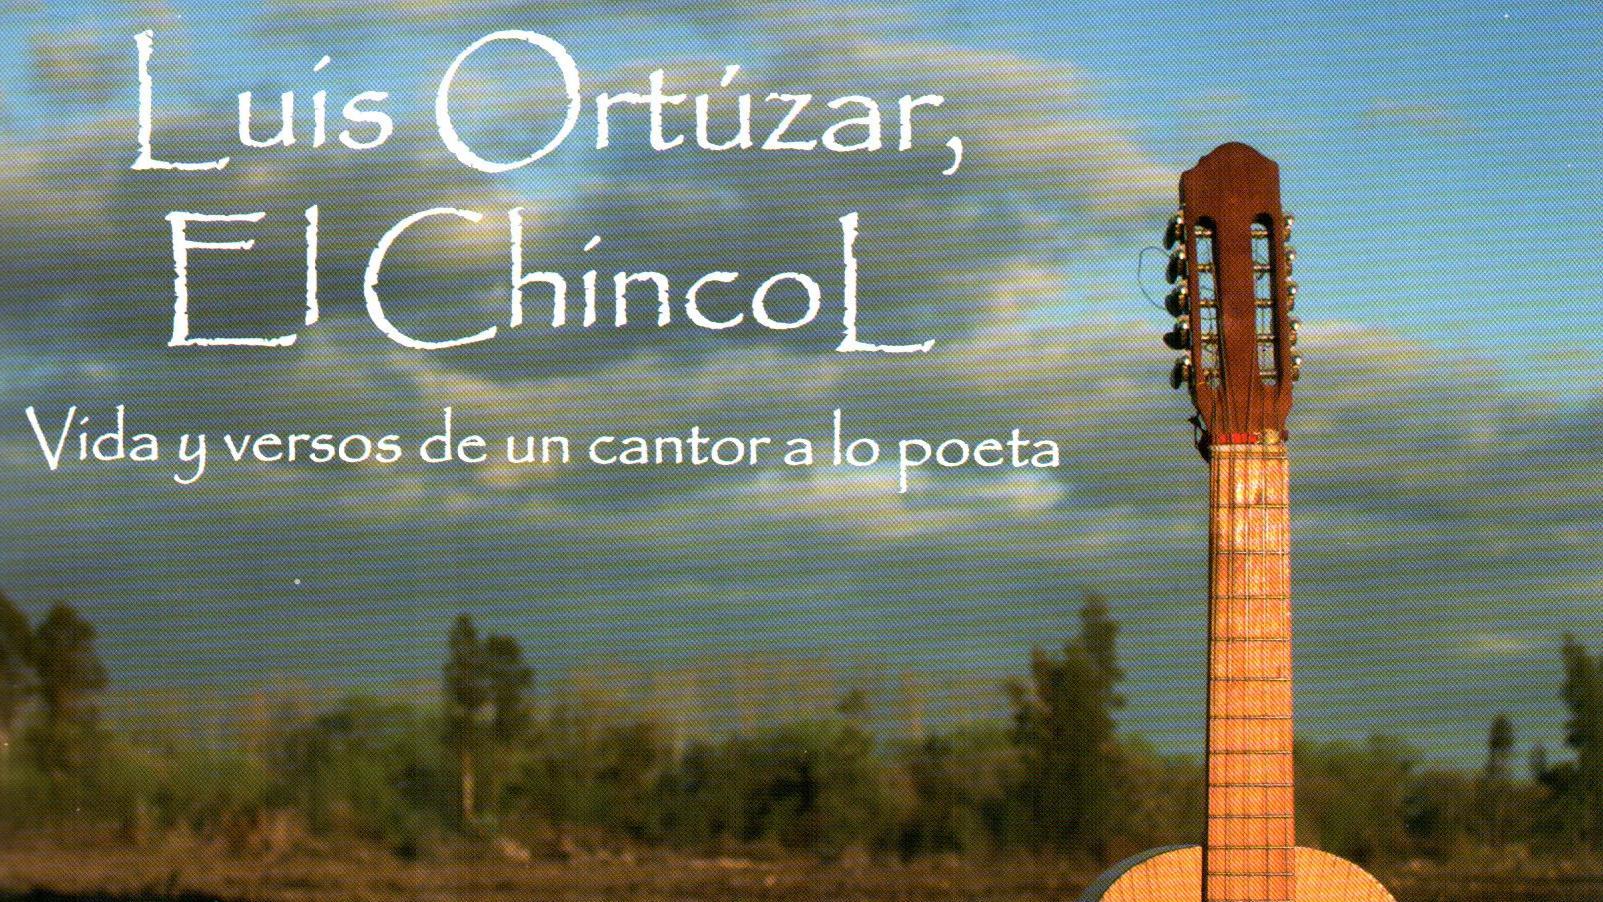 Luis Ortúzar, el Chincol. Vida y versos de un cantor a lo poeta.